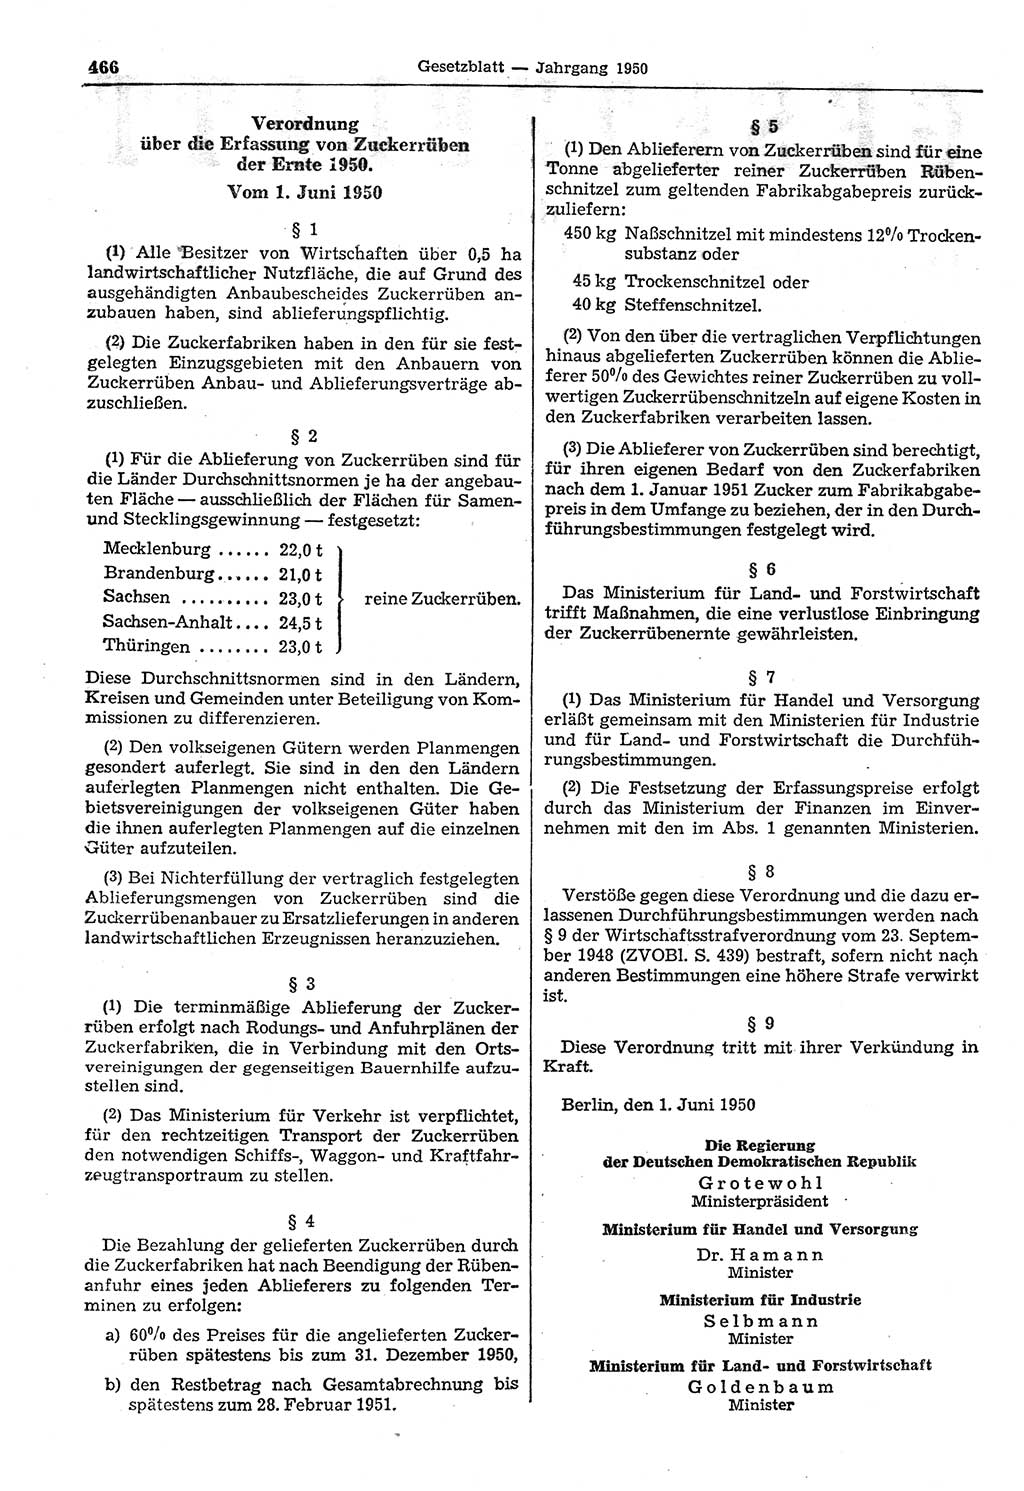 Gesetzblatt (GBl.) der Deutschen Demokratischen Republik (DDR) 1950, Seite 466 (GBl. DDR 1950, S. 466)